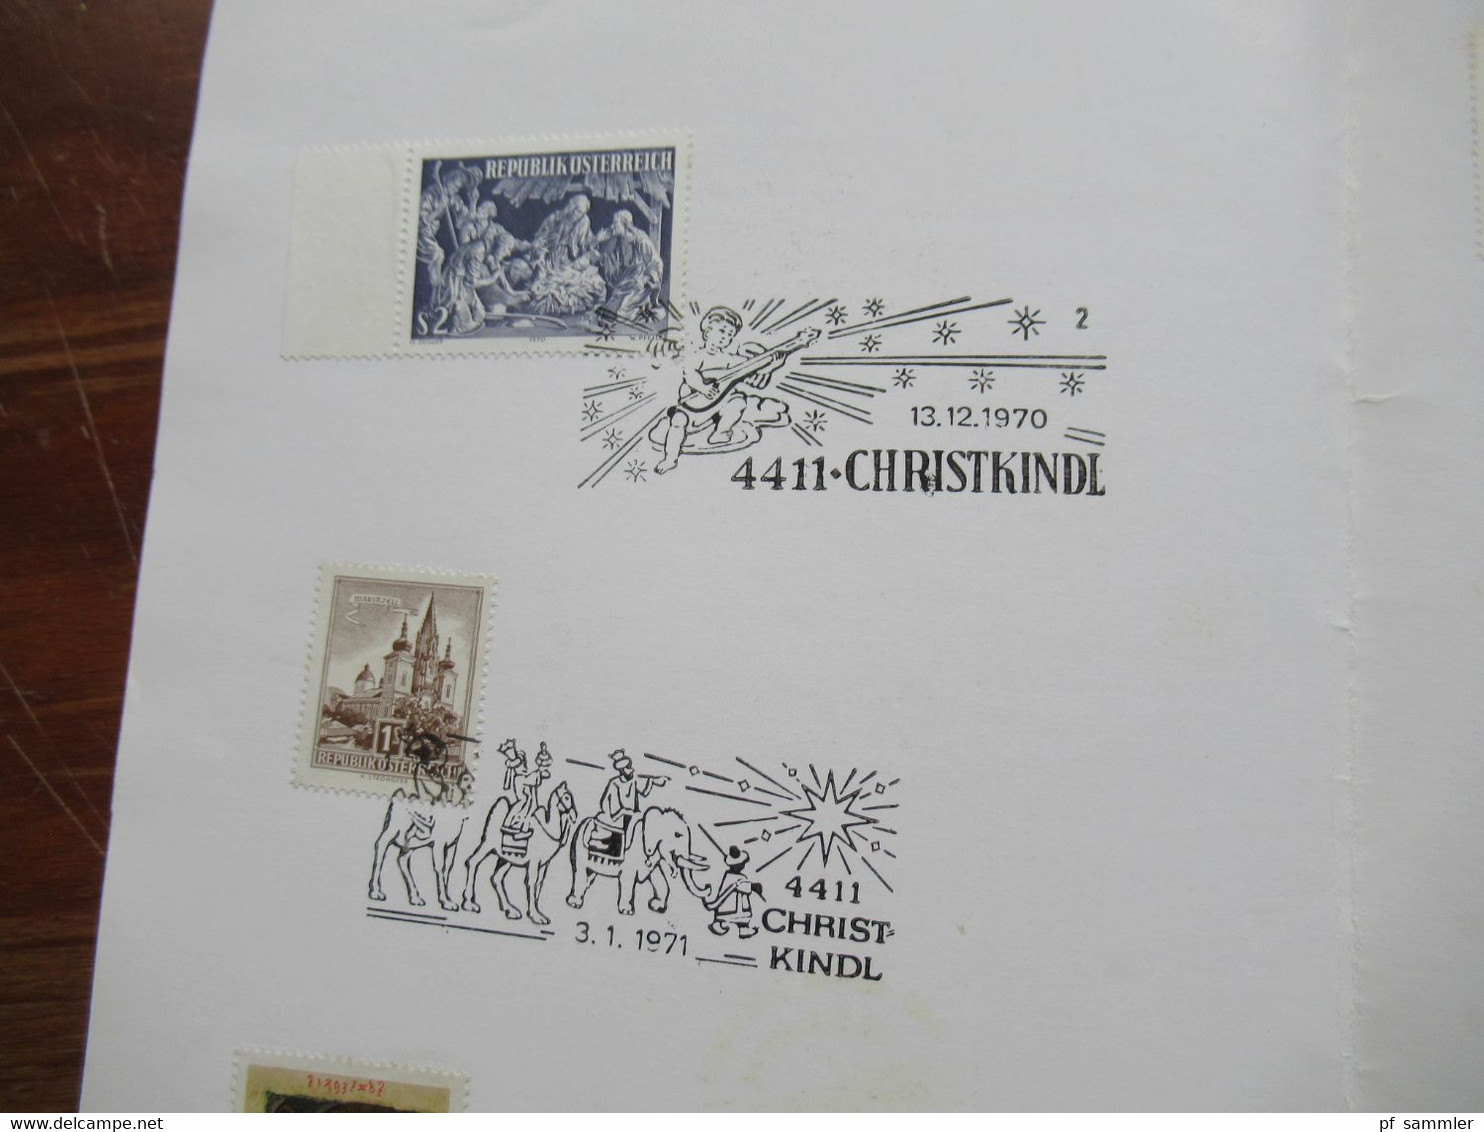 Österreich 1963 - 1993 Christkindl Belege mit verschiedenen Stempeln und etlichen Leitzetteln Über Christkindl 57 Belege